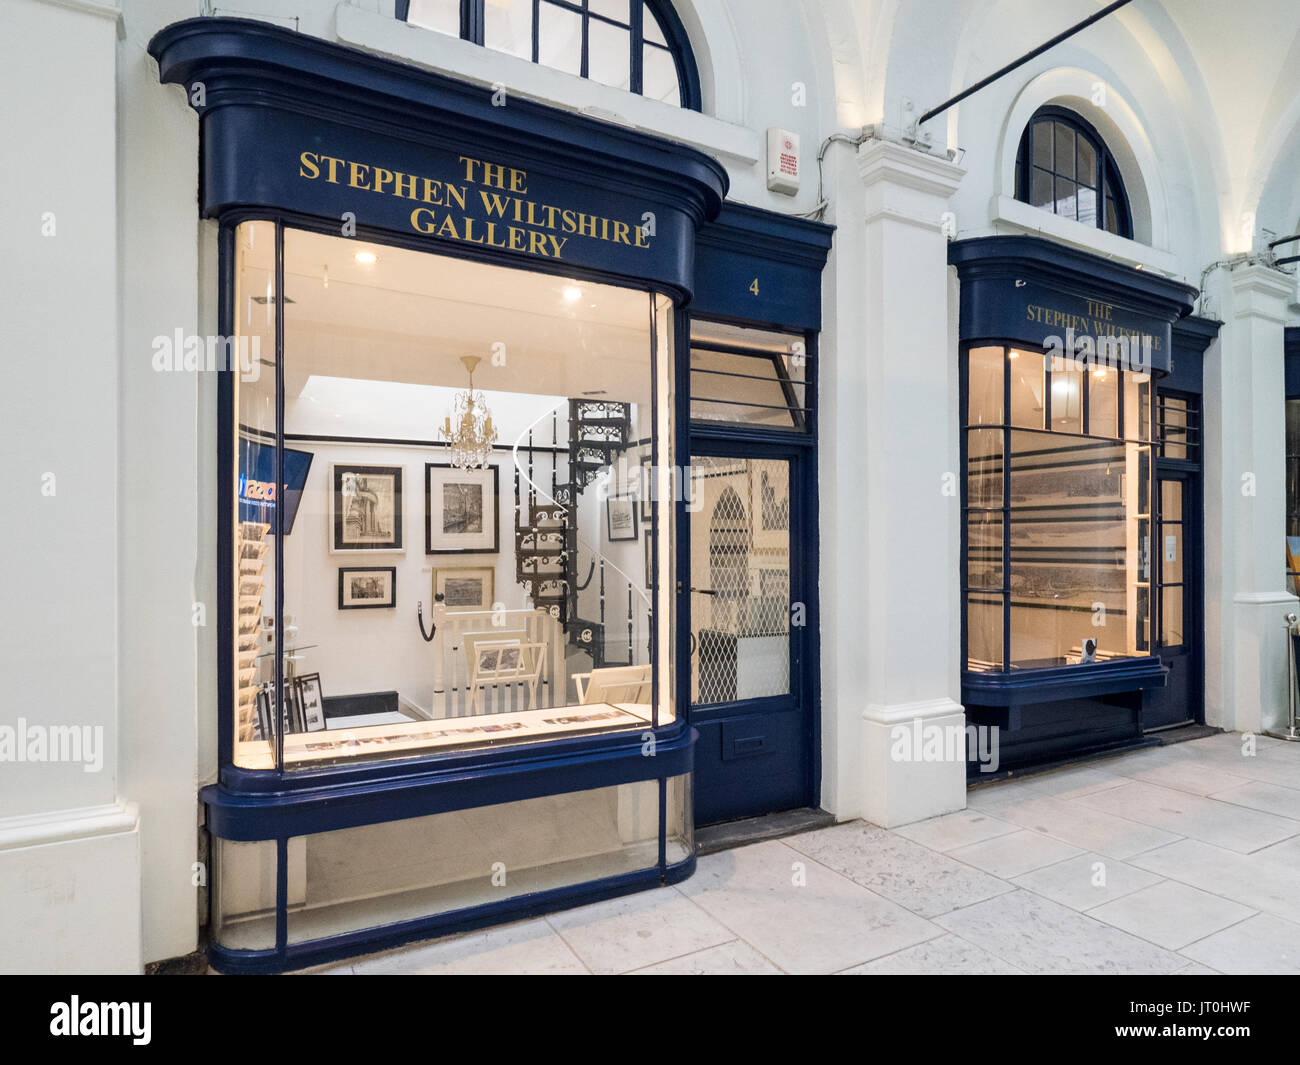 Die Stephen Wiltshire Gallery in Royal Opera Arcade, St. James's, London, Großbritannien. Stephen ist bekannt für seine detaillierten Stadtbild Zeichnungen bekannt. Stockfoto